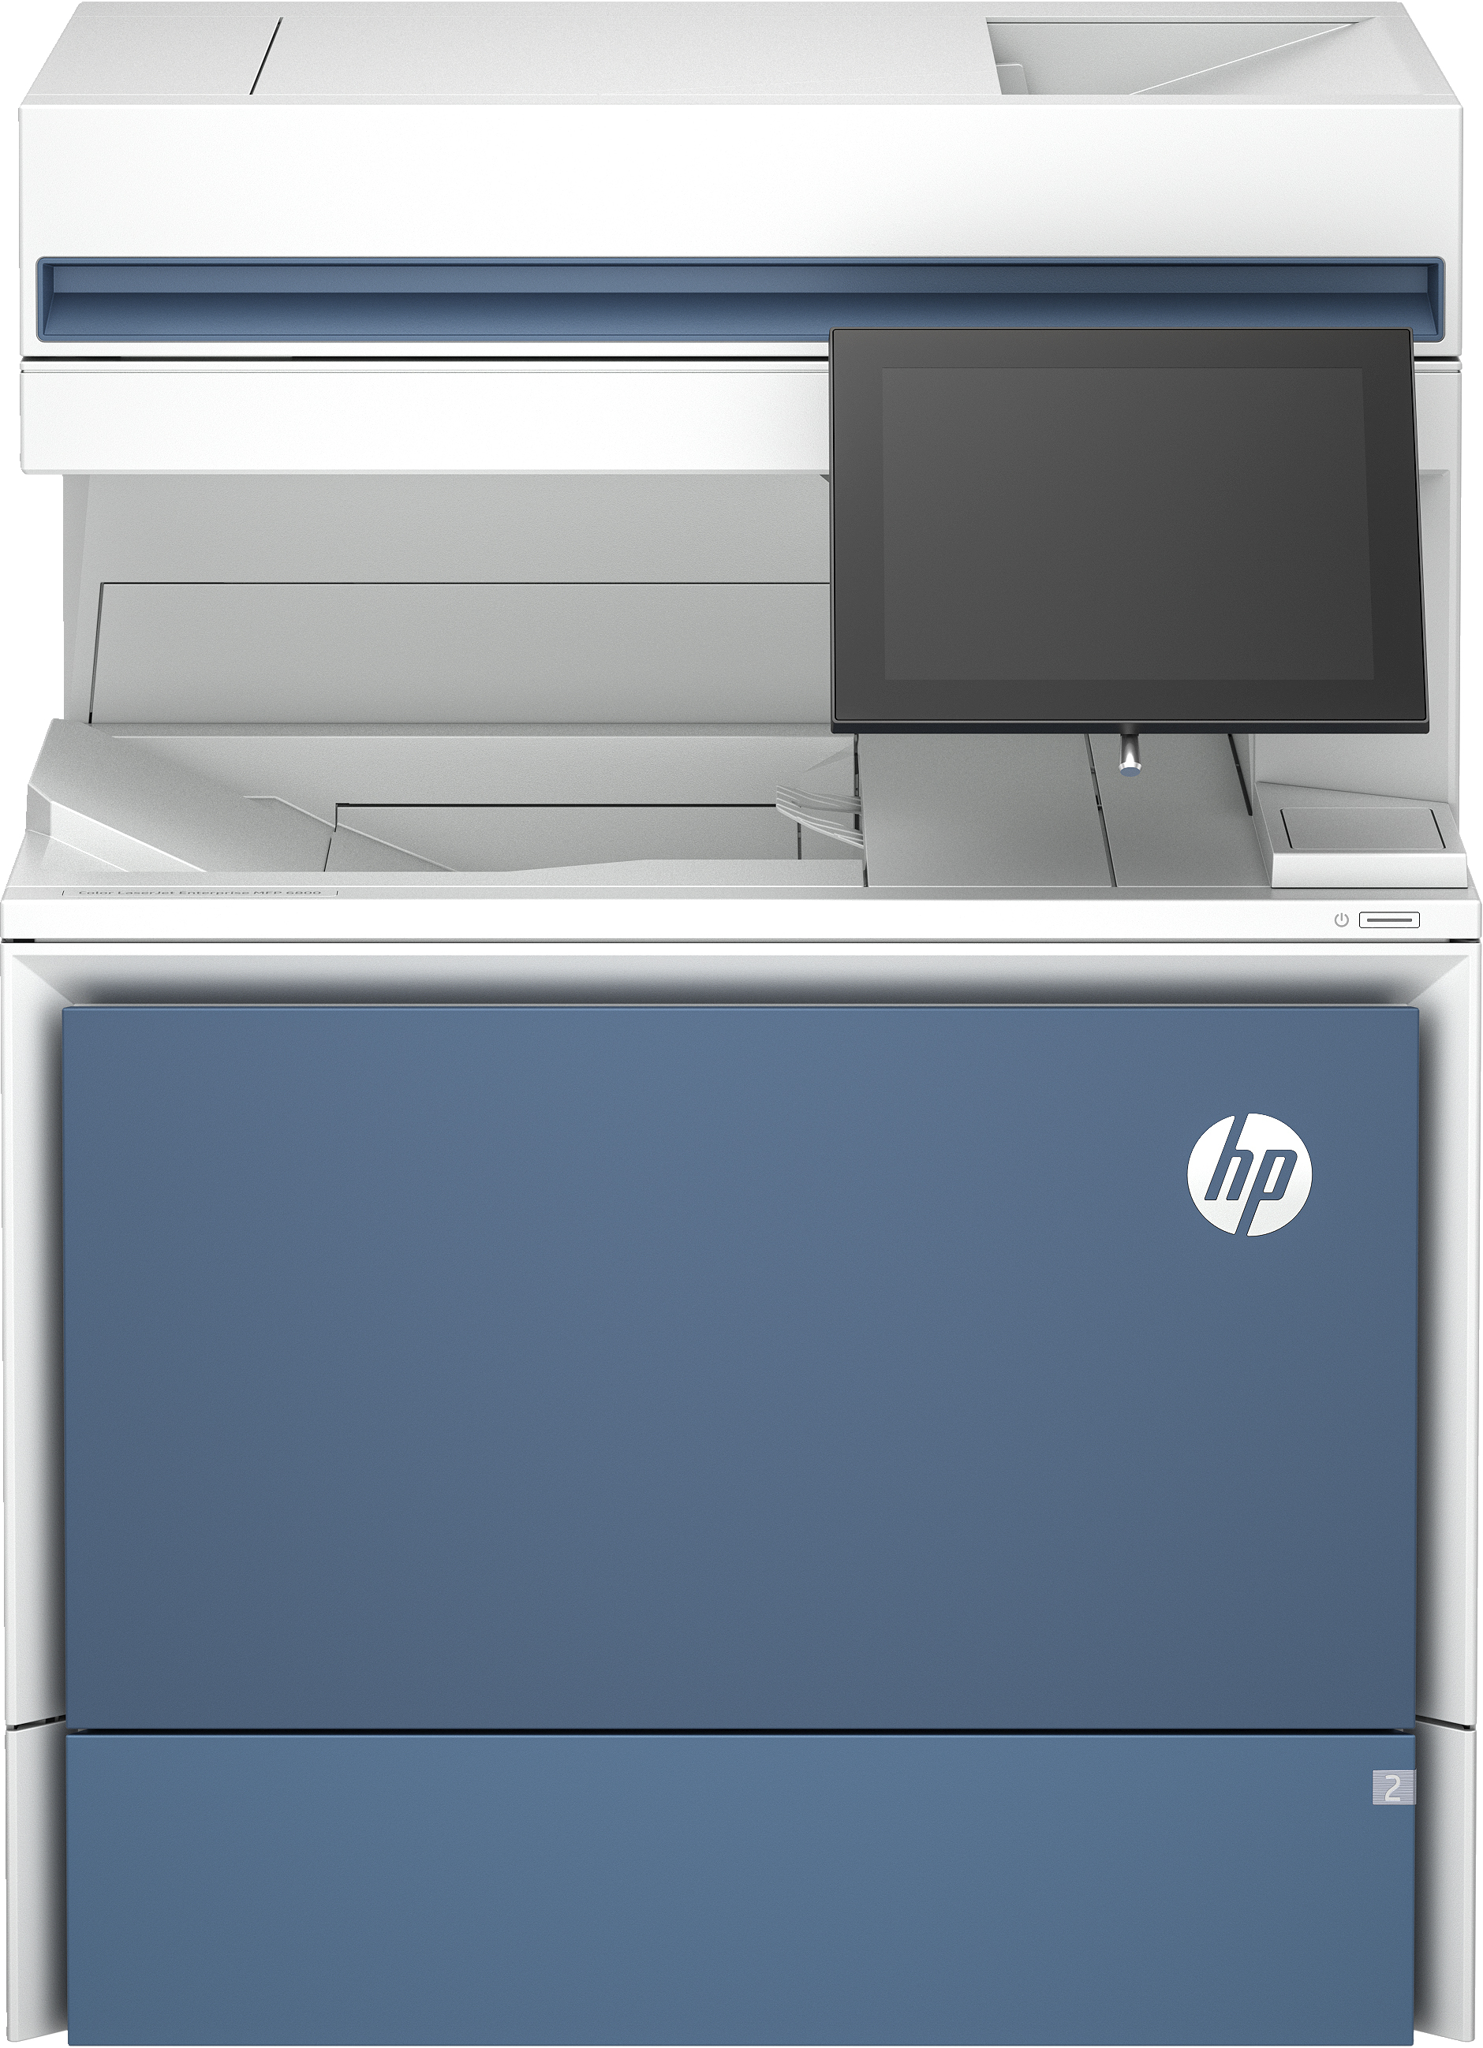 Bild von HP Color LaserJet Enterprise MFP 6800dn Drucker - Drucken - Kopieren - Scannen - Faxen (optional) - Automatische Dokumentenzuführung; optionale Fächer mit hoher Kapazität; Touchscreen; TerraJet Tonerkartusche - Laser - Farbdruck - 1200 x 1200 DPI - A4 - Dire